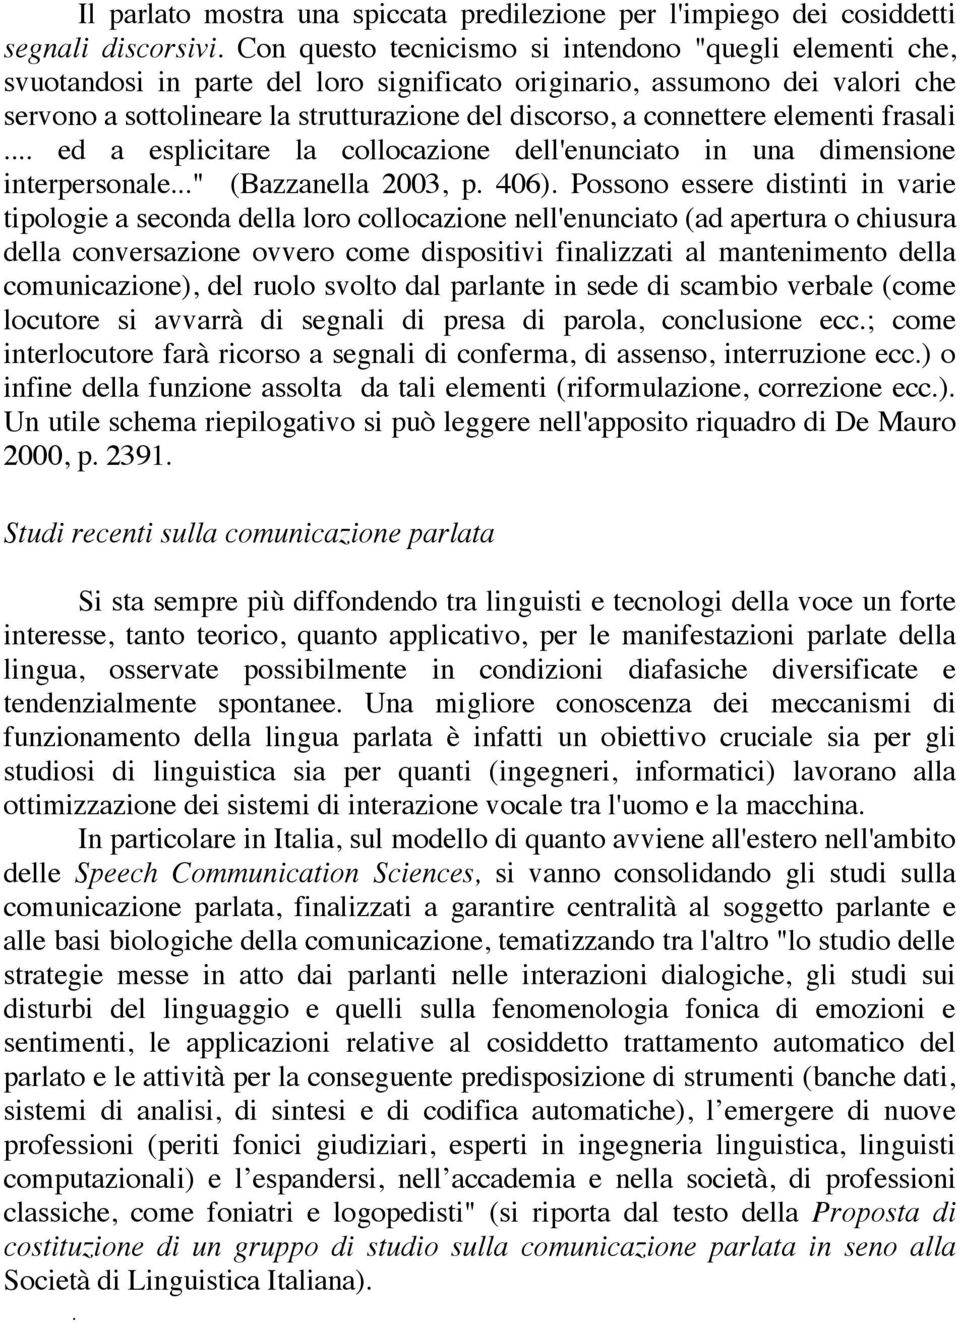 connettere elementi frasali... ed a esplicitare la collocazione dell'enunciato in una dimensione interpersonale..." (Bazzanella 2003, p. 406).